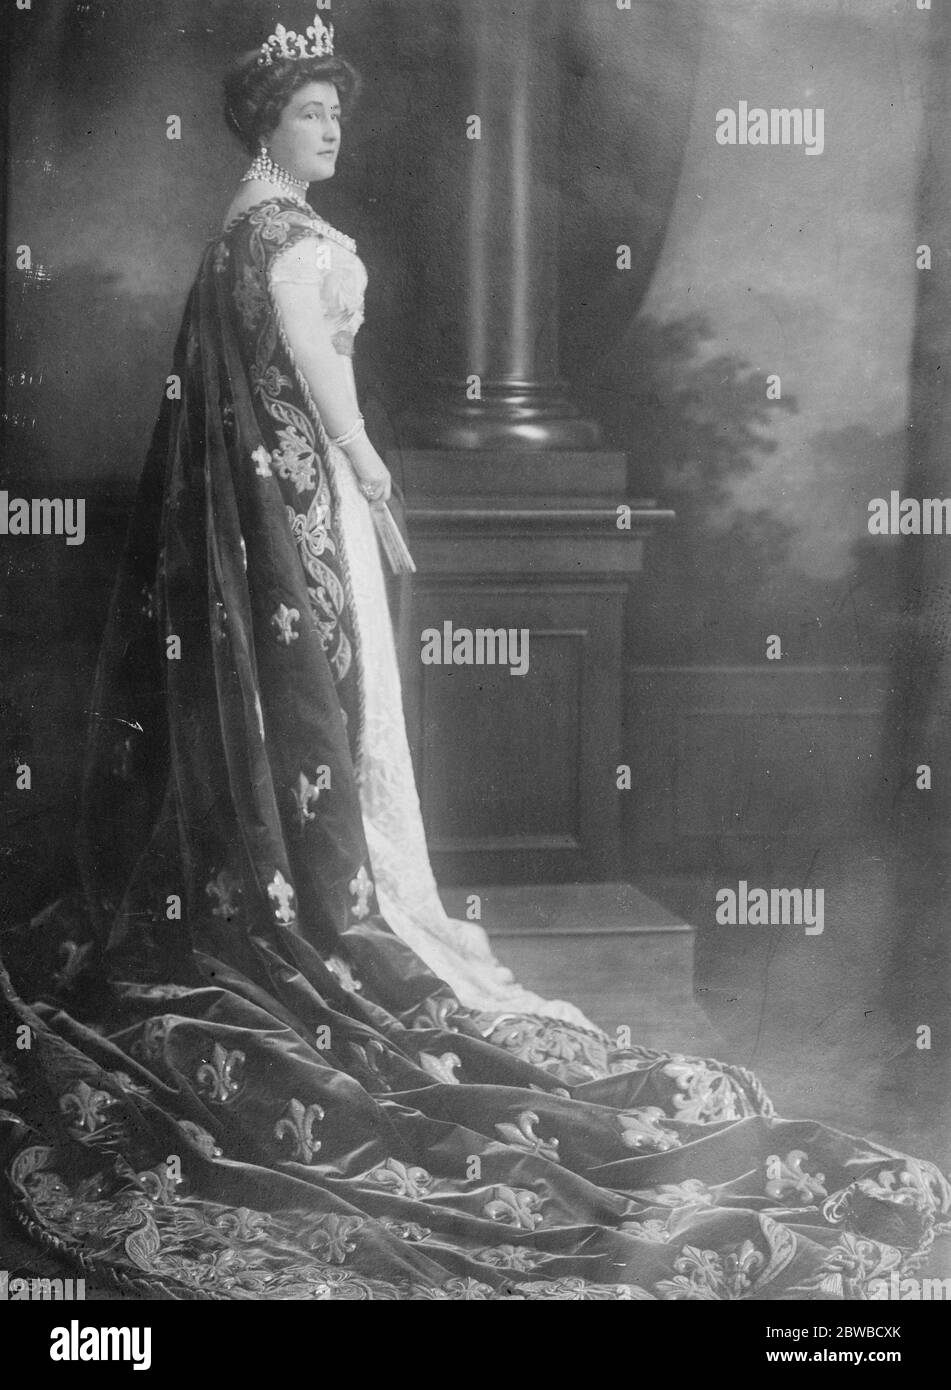 Kläger in Französisch Klage . Prinzessin Elias von Bourbon Parma, die mit ihrem Mann den Prinz Xavier und Sixte von Bourbon Parma im Zusammenhang mit dem Kampf um den Besitz des berühmten Chateau de Chambord verklagt. 31 Dezember 1924 Stockfoto